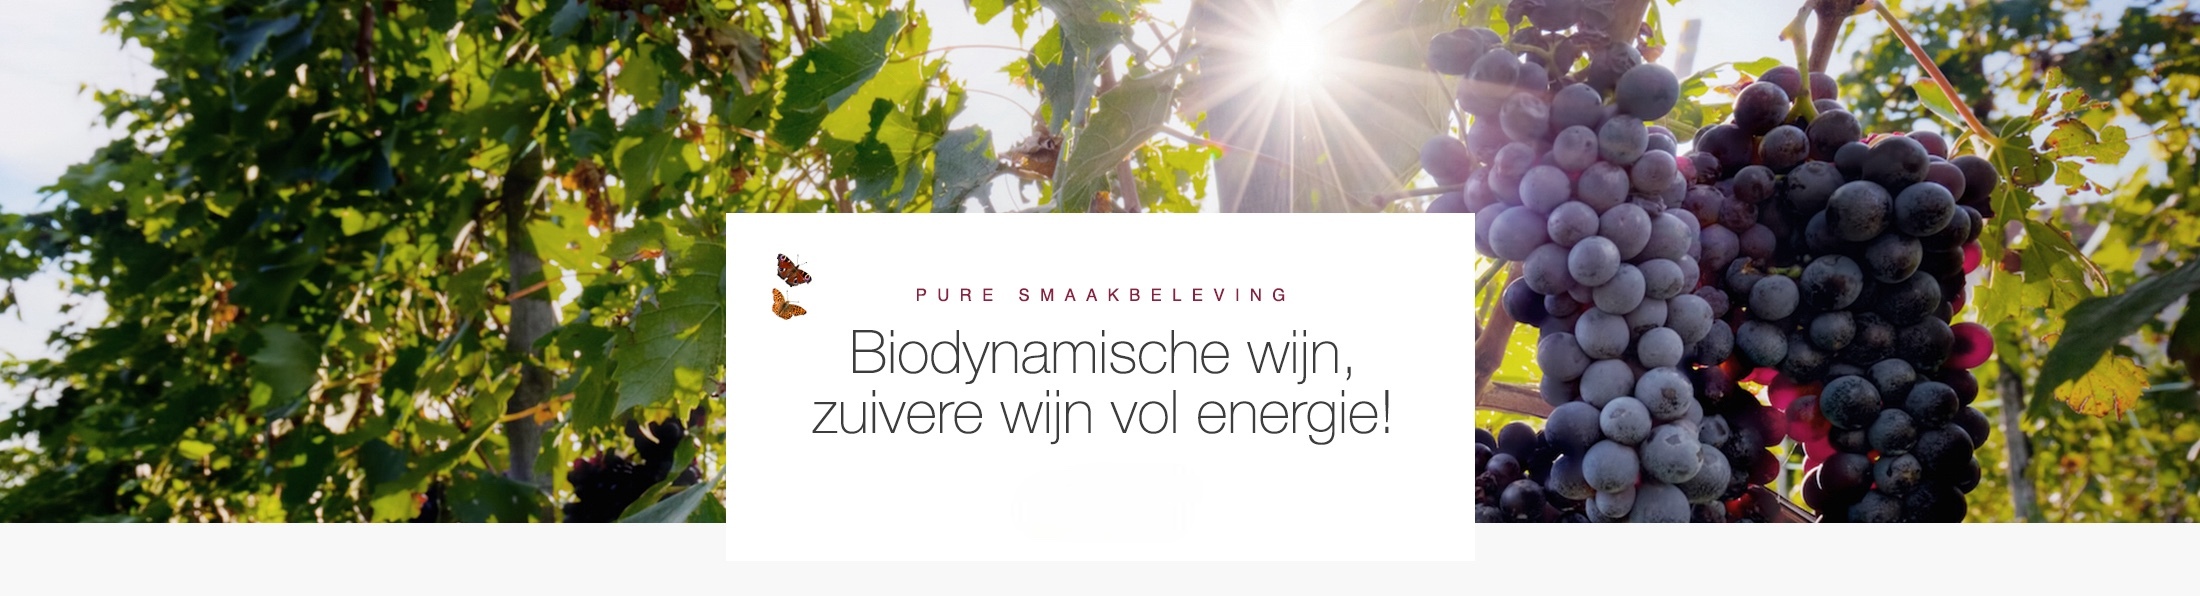 Biodynamische wijn Home page